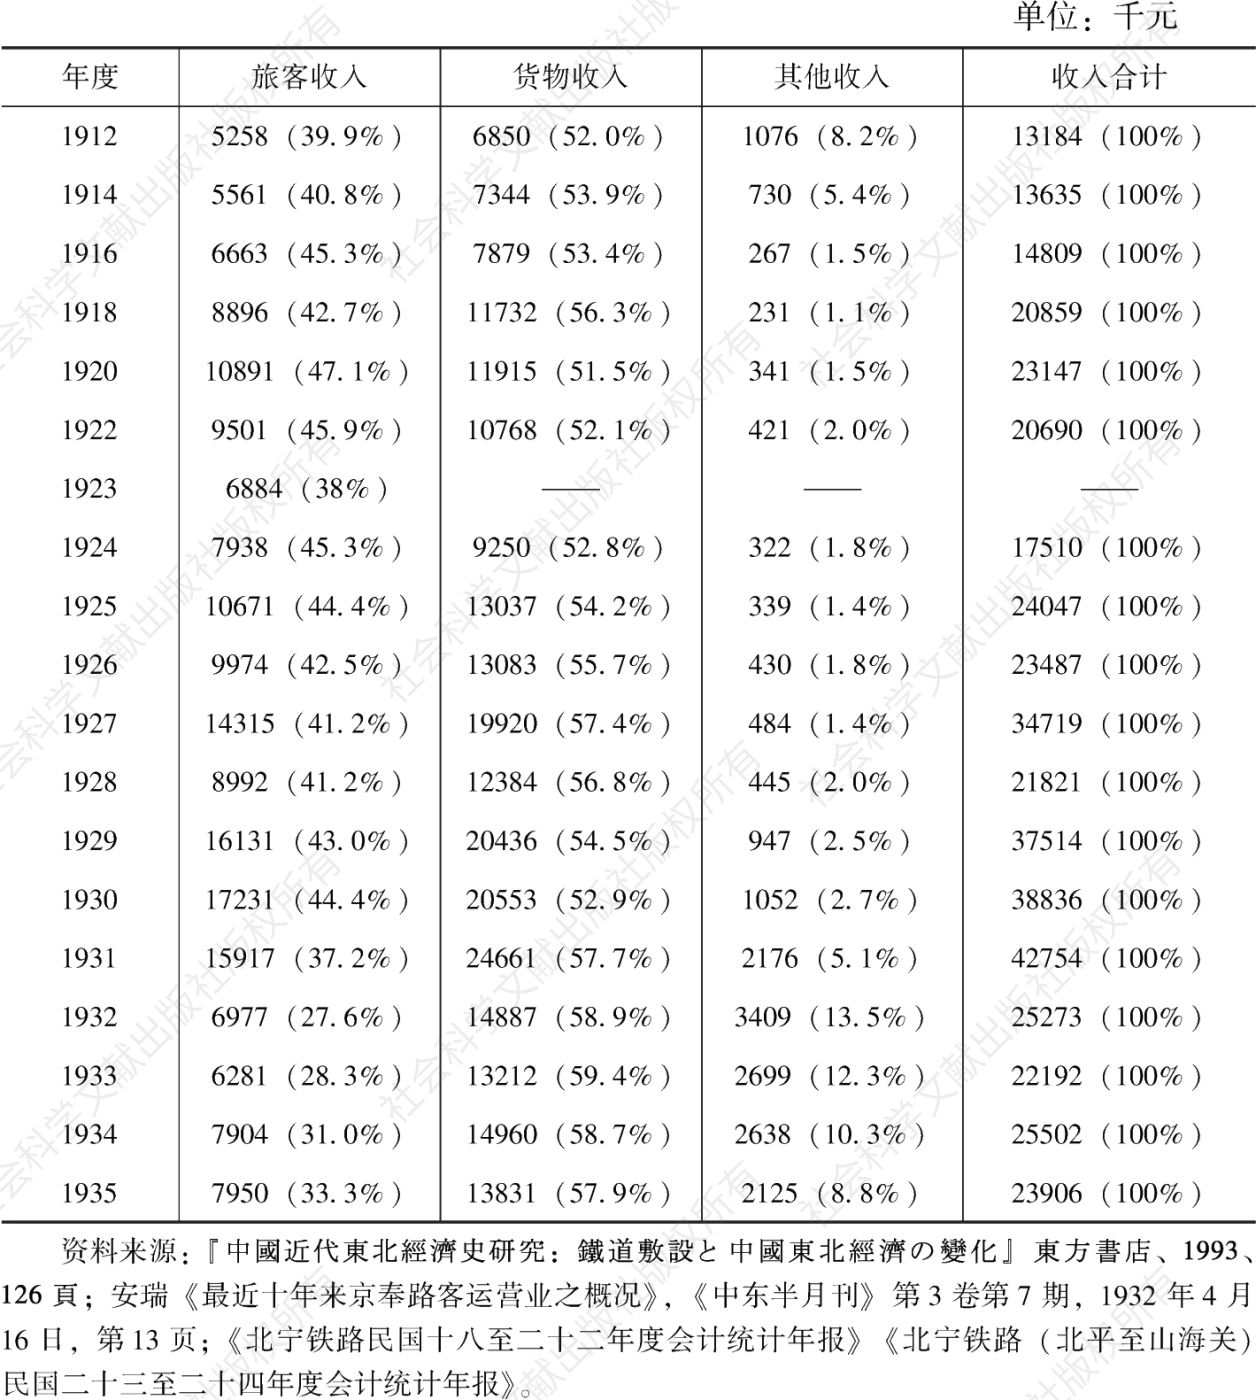 表2-4 1912—1935年京奉铁路营业进款统计